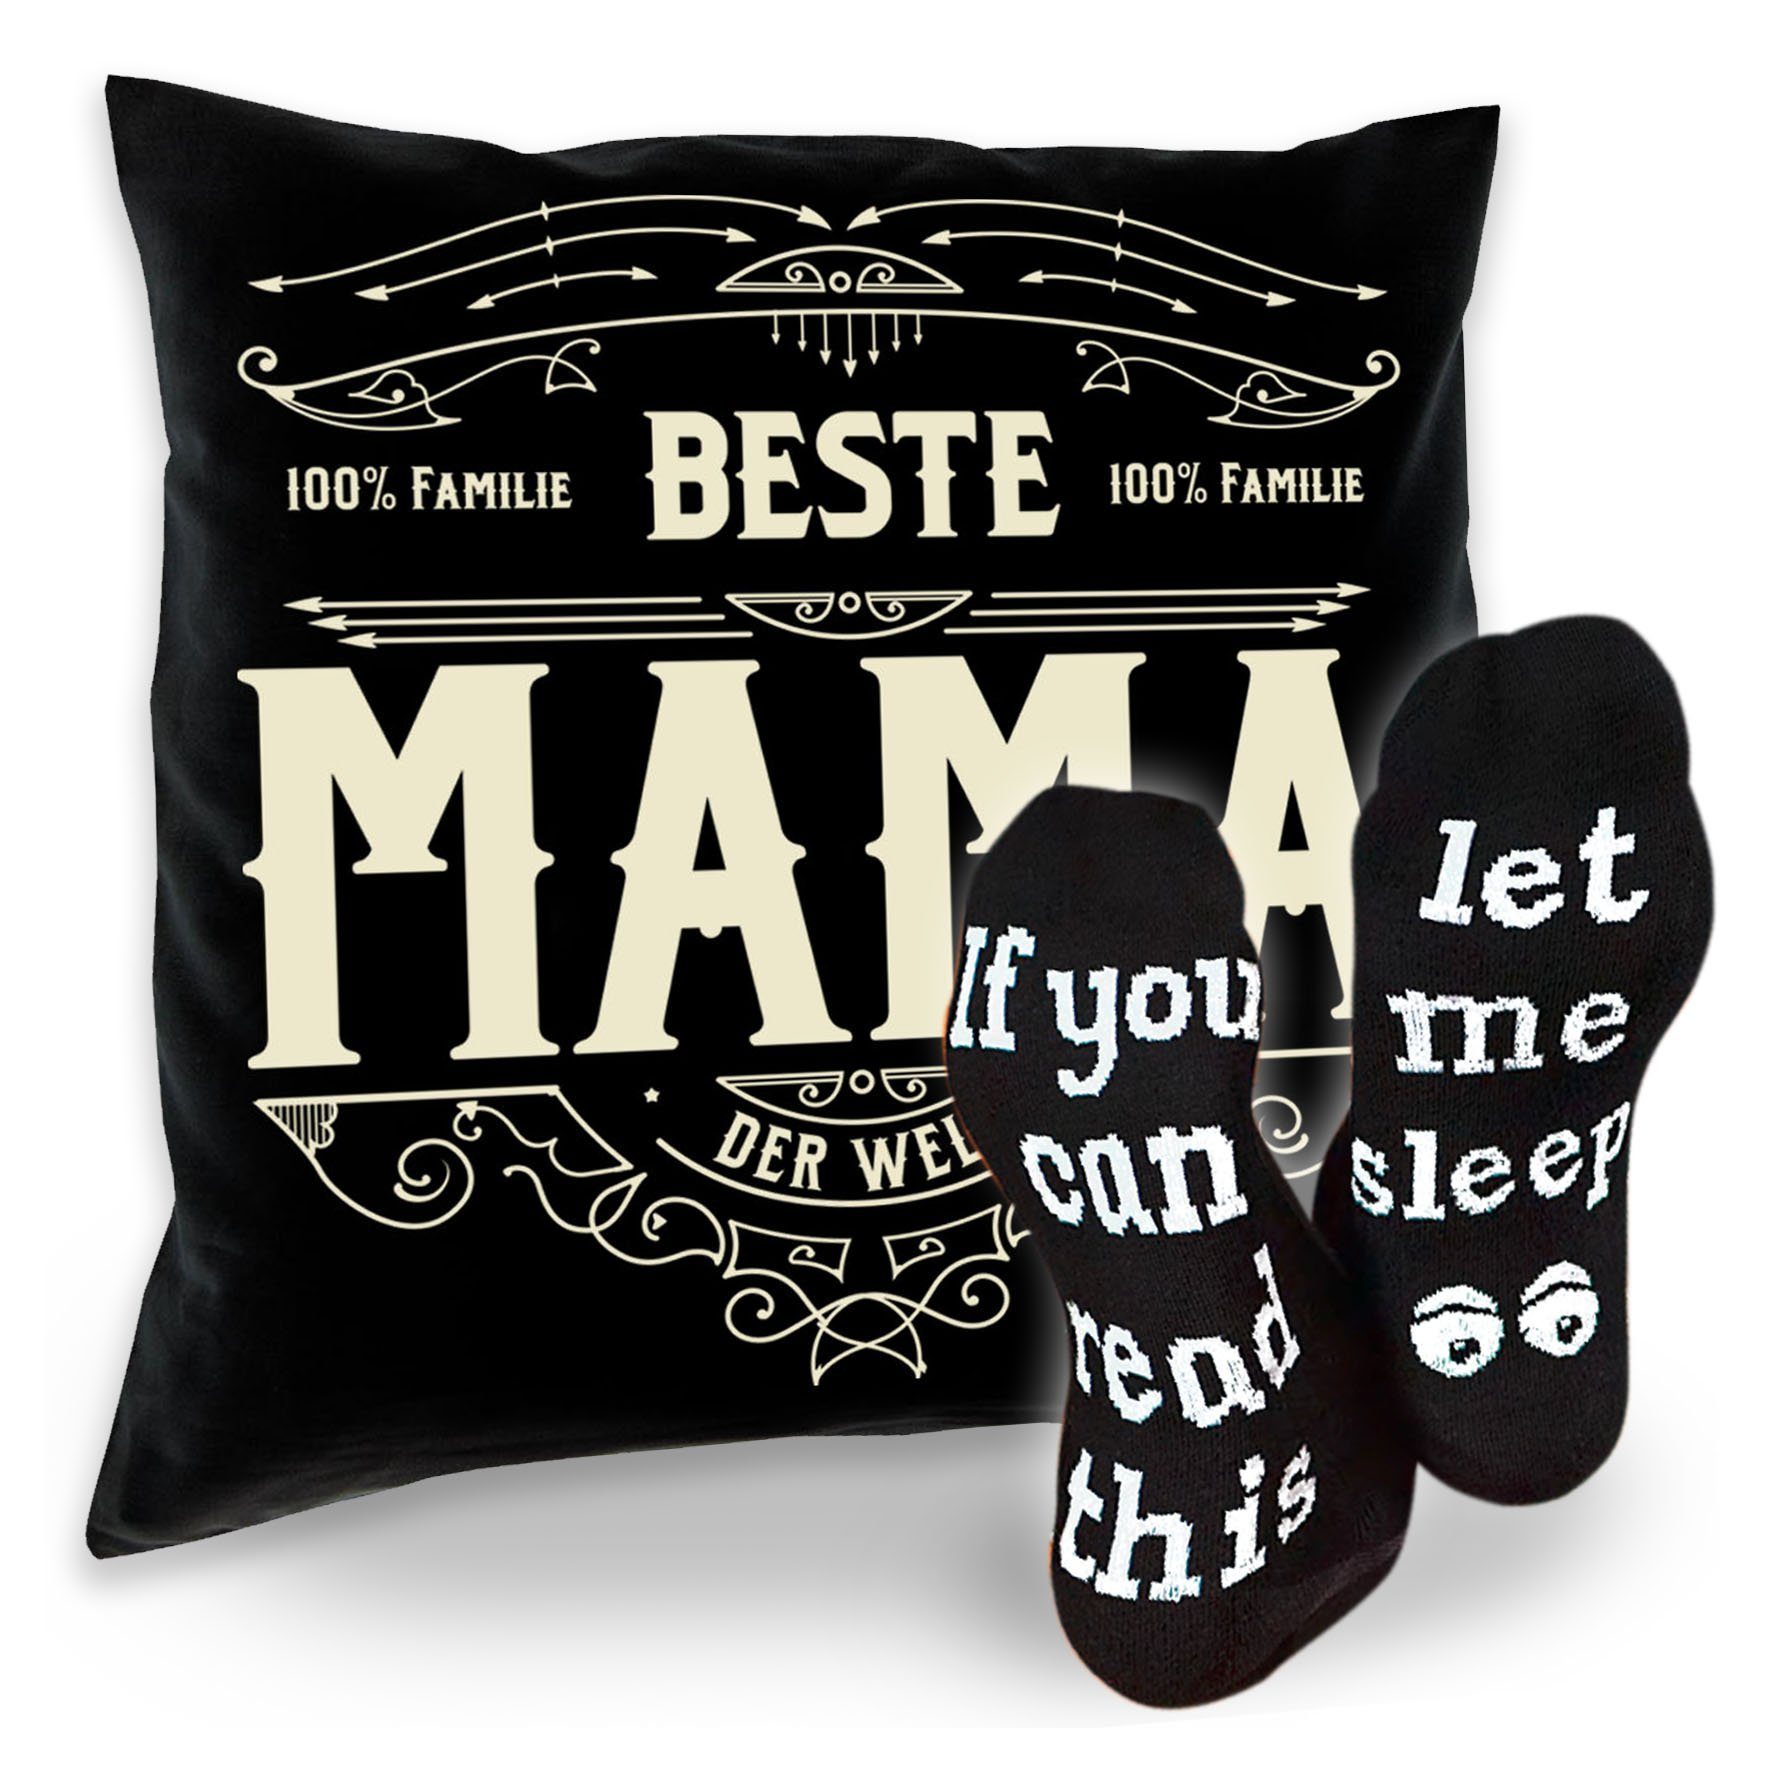 Soreso® Dekokissen Kissen Beste Mama & Sprüche Socken Sleep, Geschenke für Mütter Geschenkidee schwarz